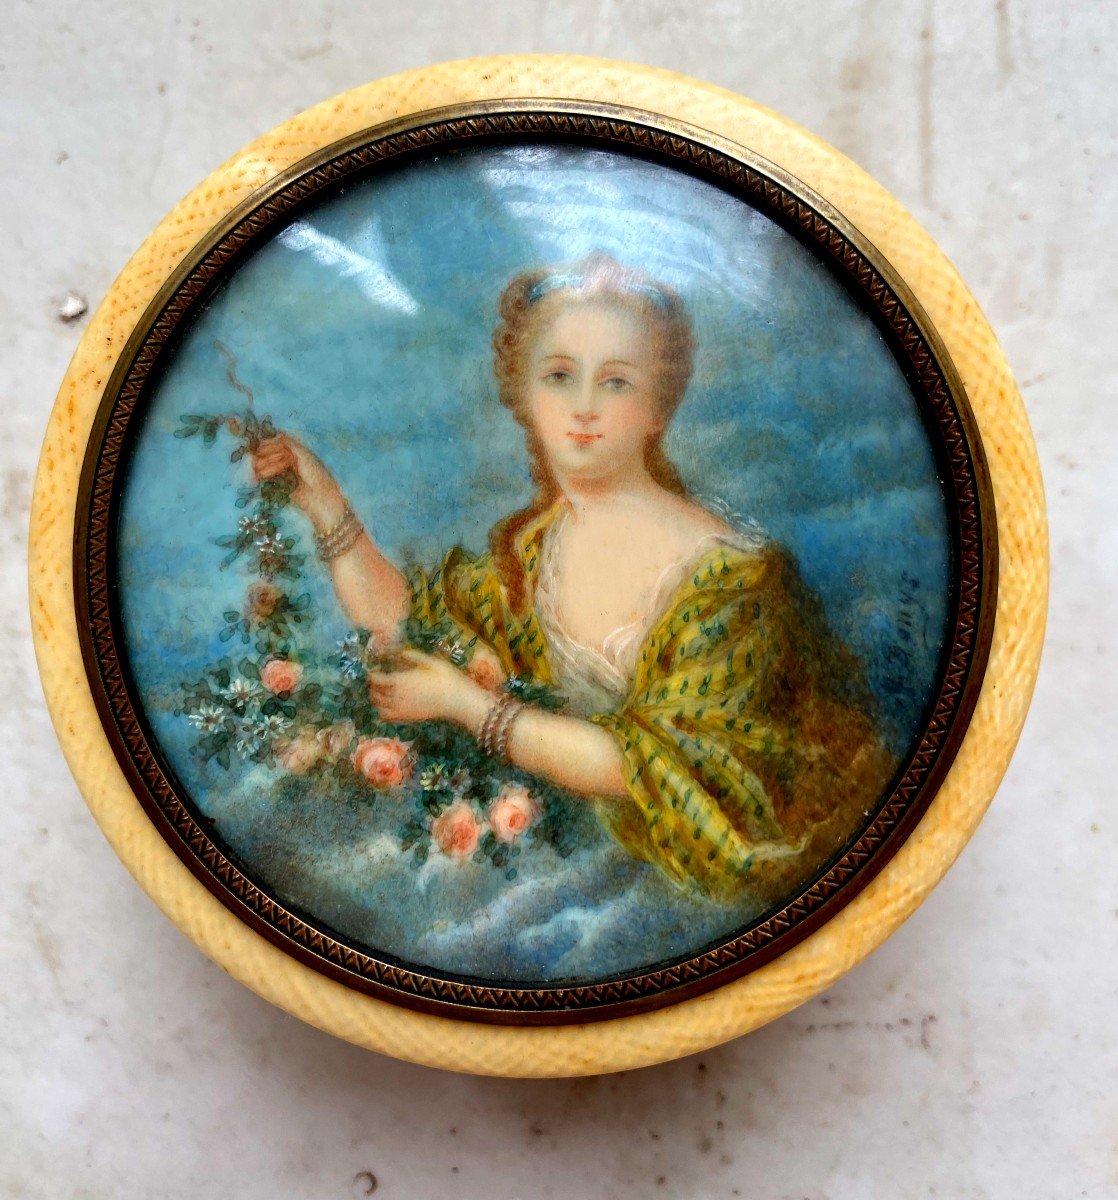 Elégant Poudrier En Ivoire d'époque Louis XVI, Avec Une Belle Miniature d'Une Dame De Qualité "